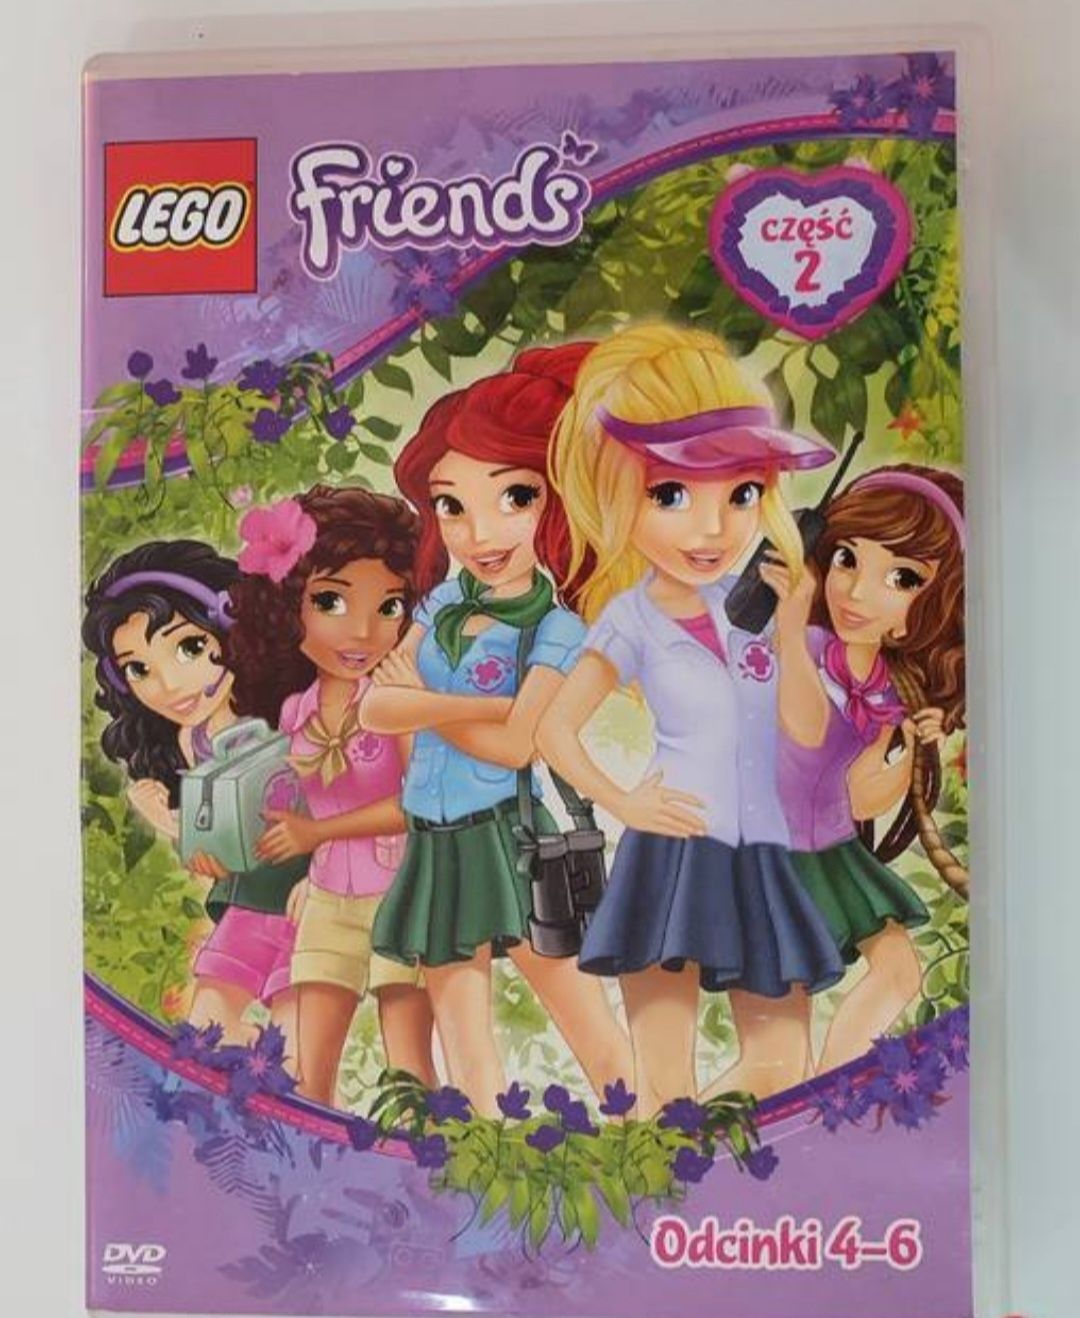 LEGO Friends Część 2 (odcinki 4-6) DVD